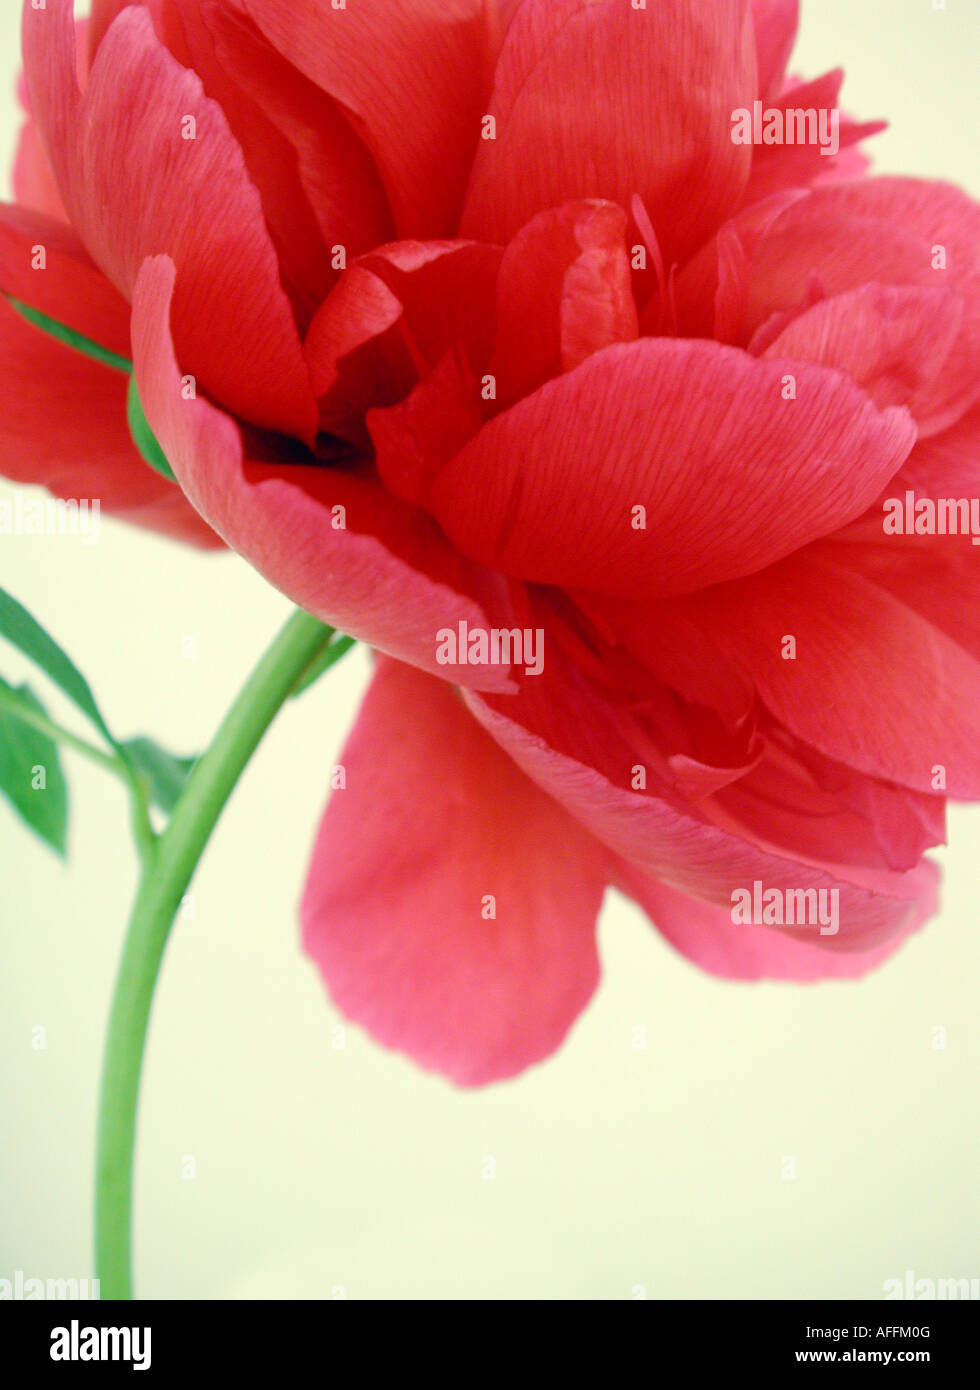 Eine rote Pfingstrose Blume auf einem cremefarbenen Hintergrund. Stockfoto